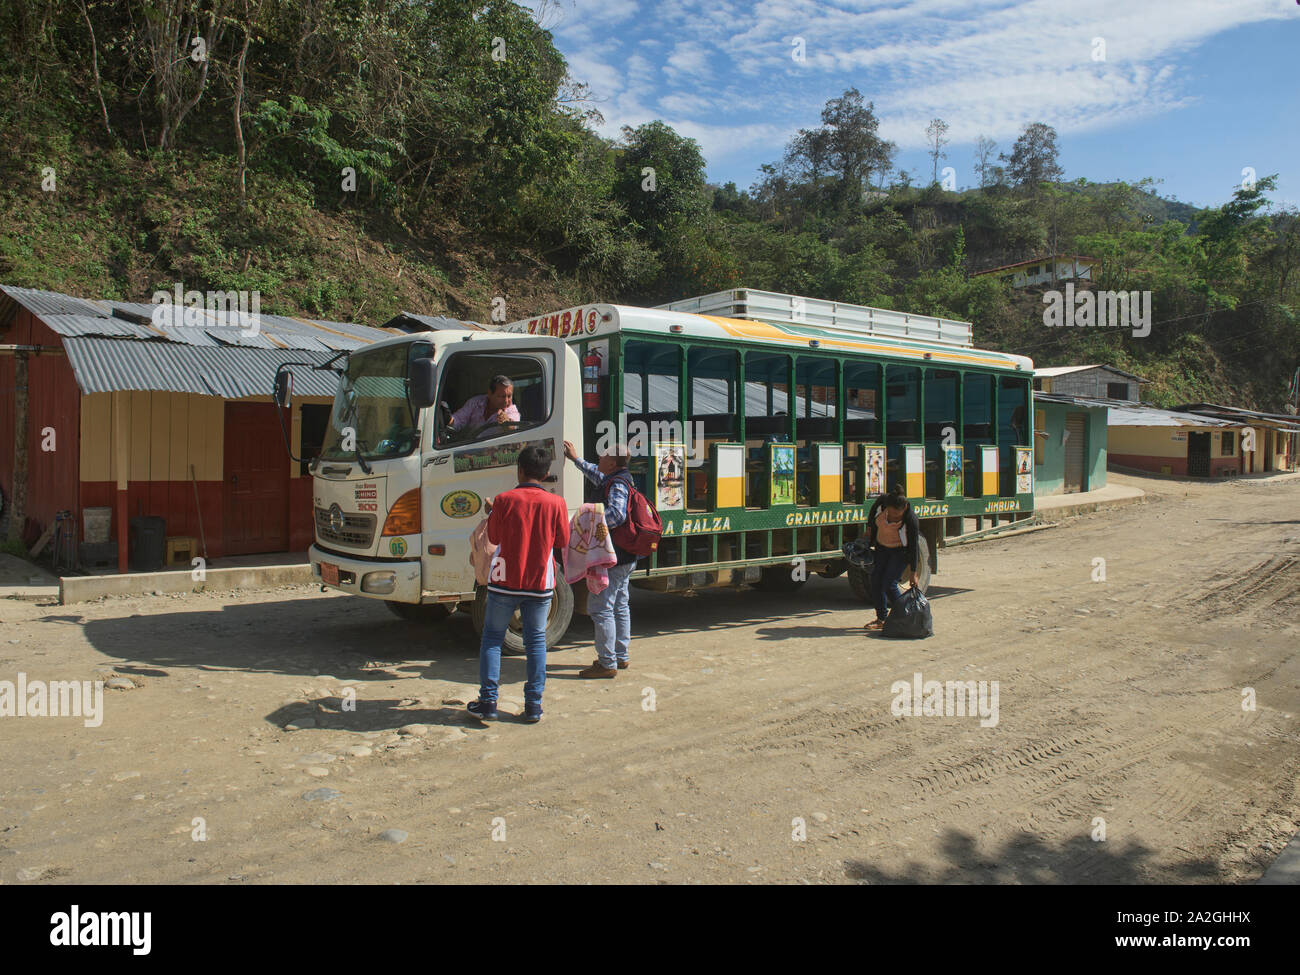 L'unique 5600, les transports publics dans les hautes terres du sud de l'Équateur Banque D'Images